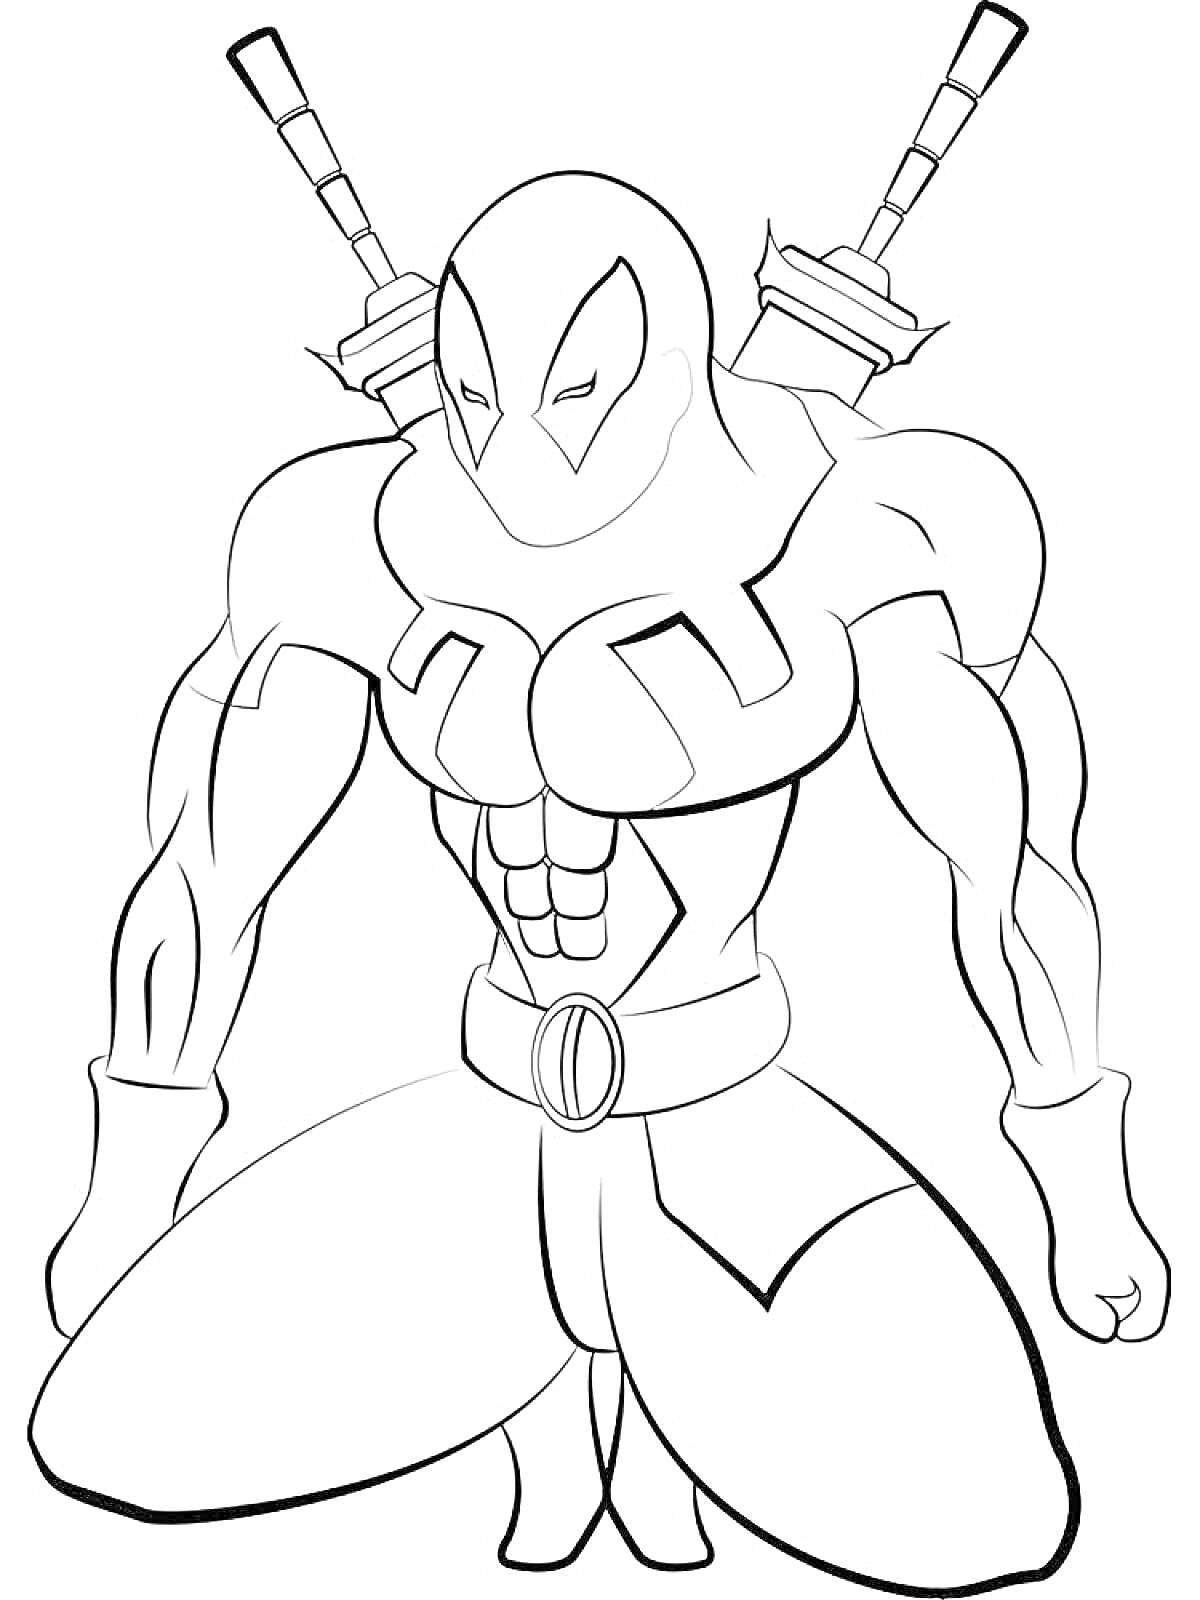 Раскраска Супергерой из Марвел с двумя мечами за спиной в маске и костюме, опустившийся на одно колено